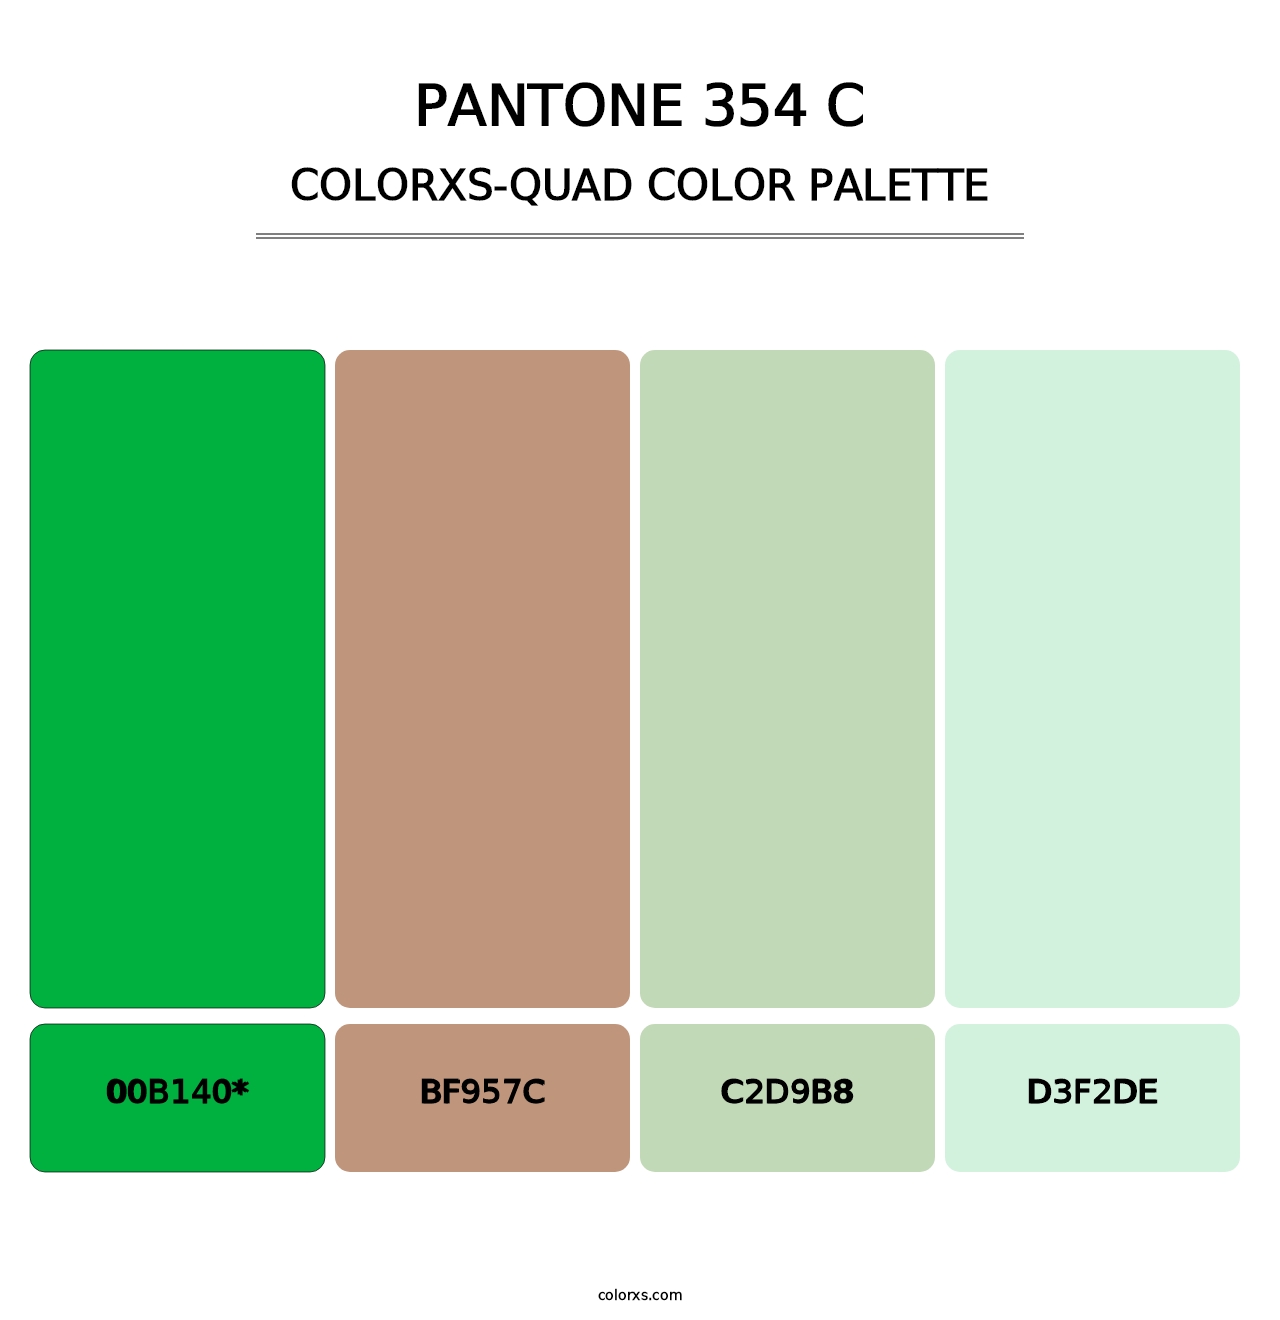 PANTONE 354 C - Colorxs Quad Palette